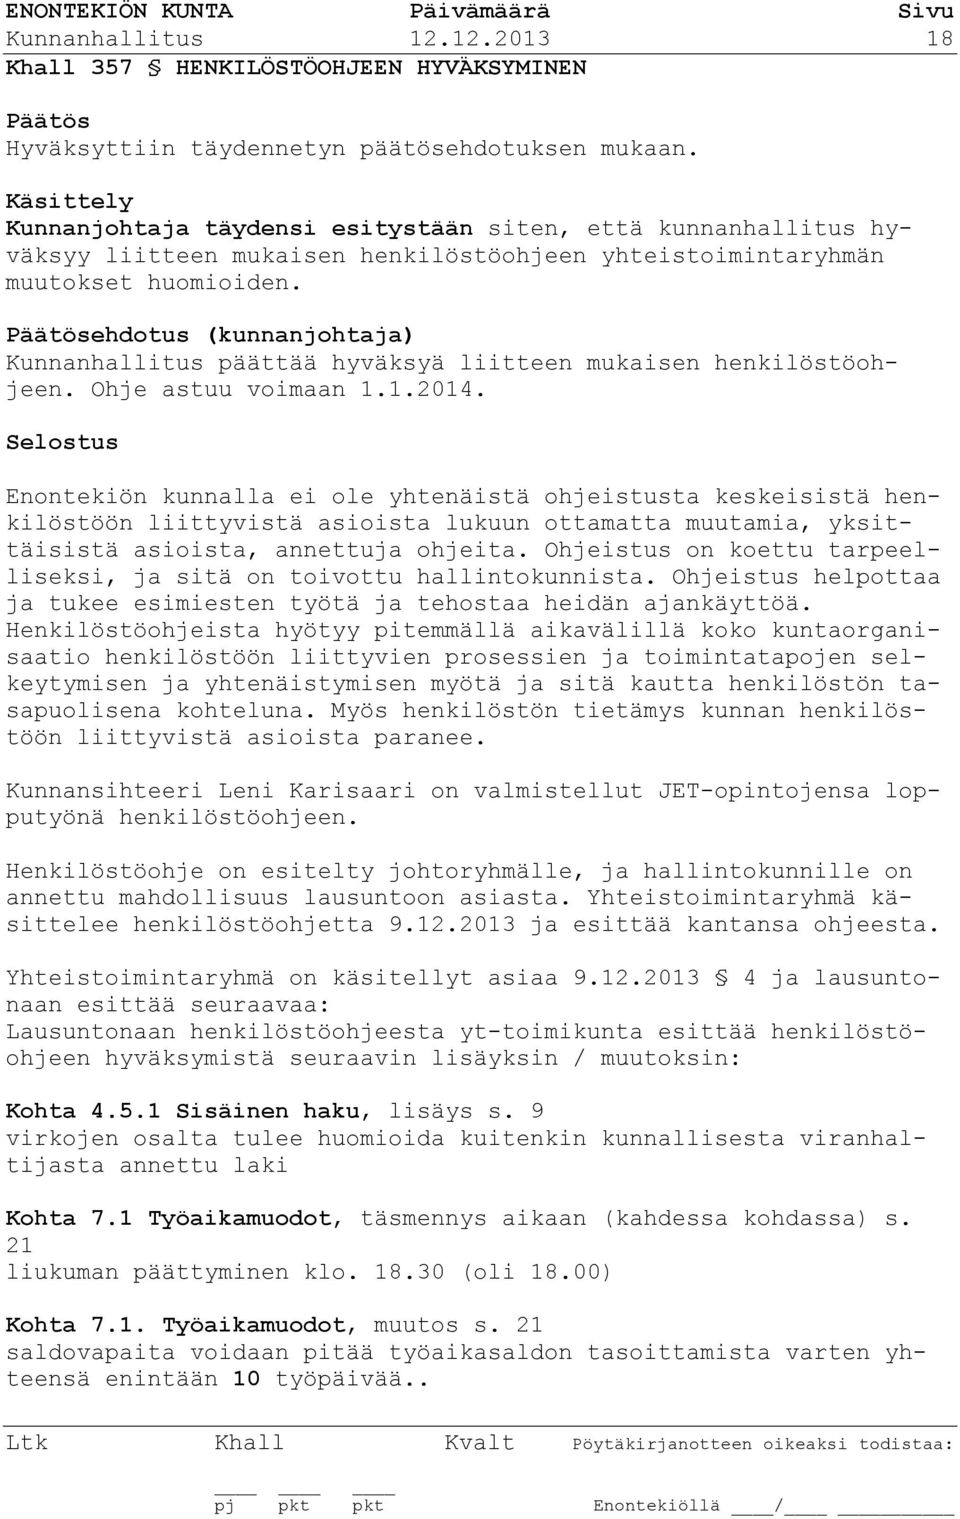 ehdotus (kunnanjohtaja) Kunnanhallitus päättää hyväksyä liitteen mukaisen henkilöstöohjeen. Ohje astuu voimaan 1.1.2014.